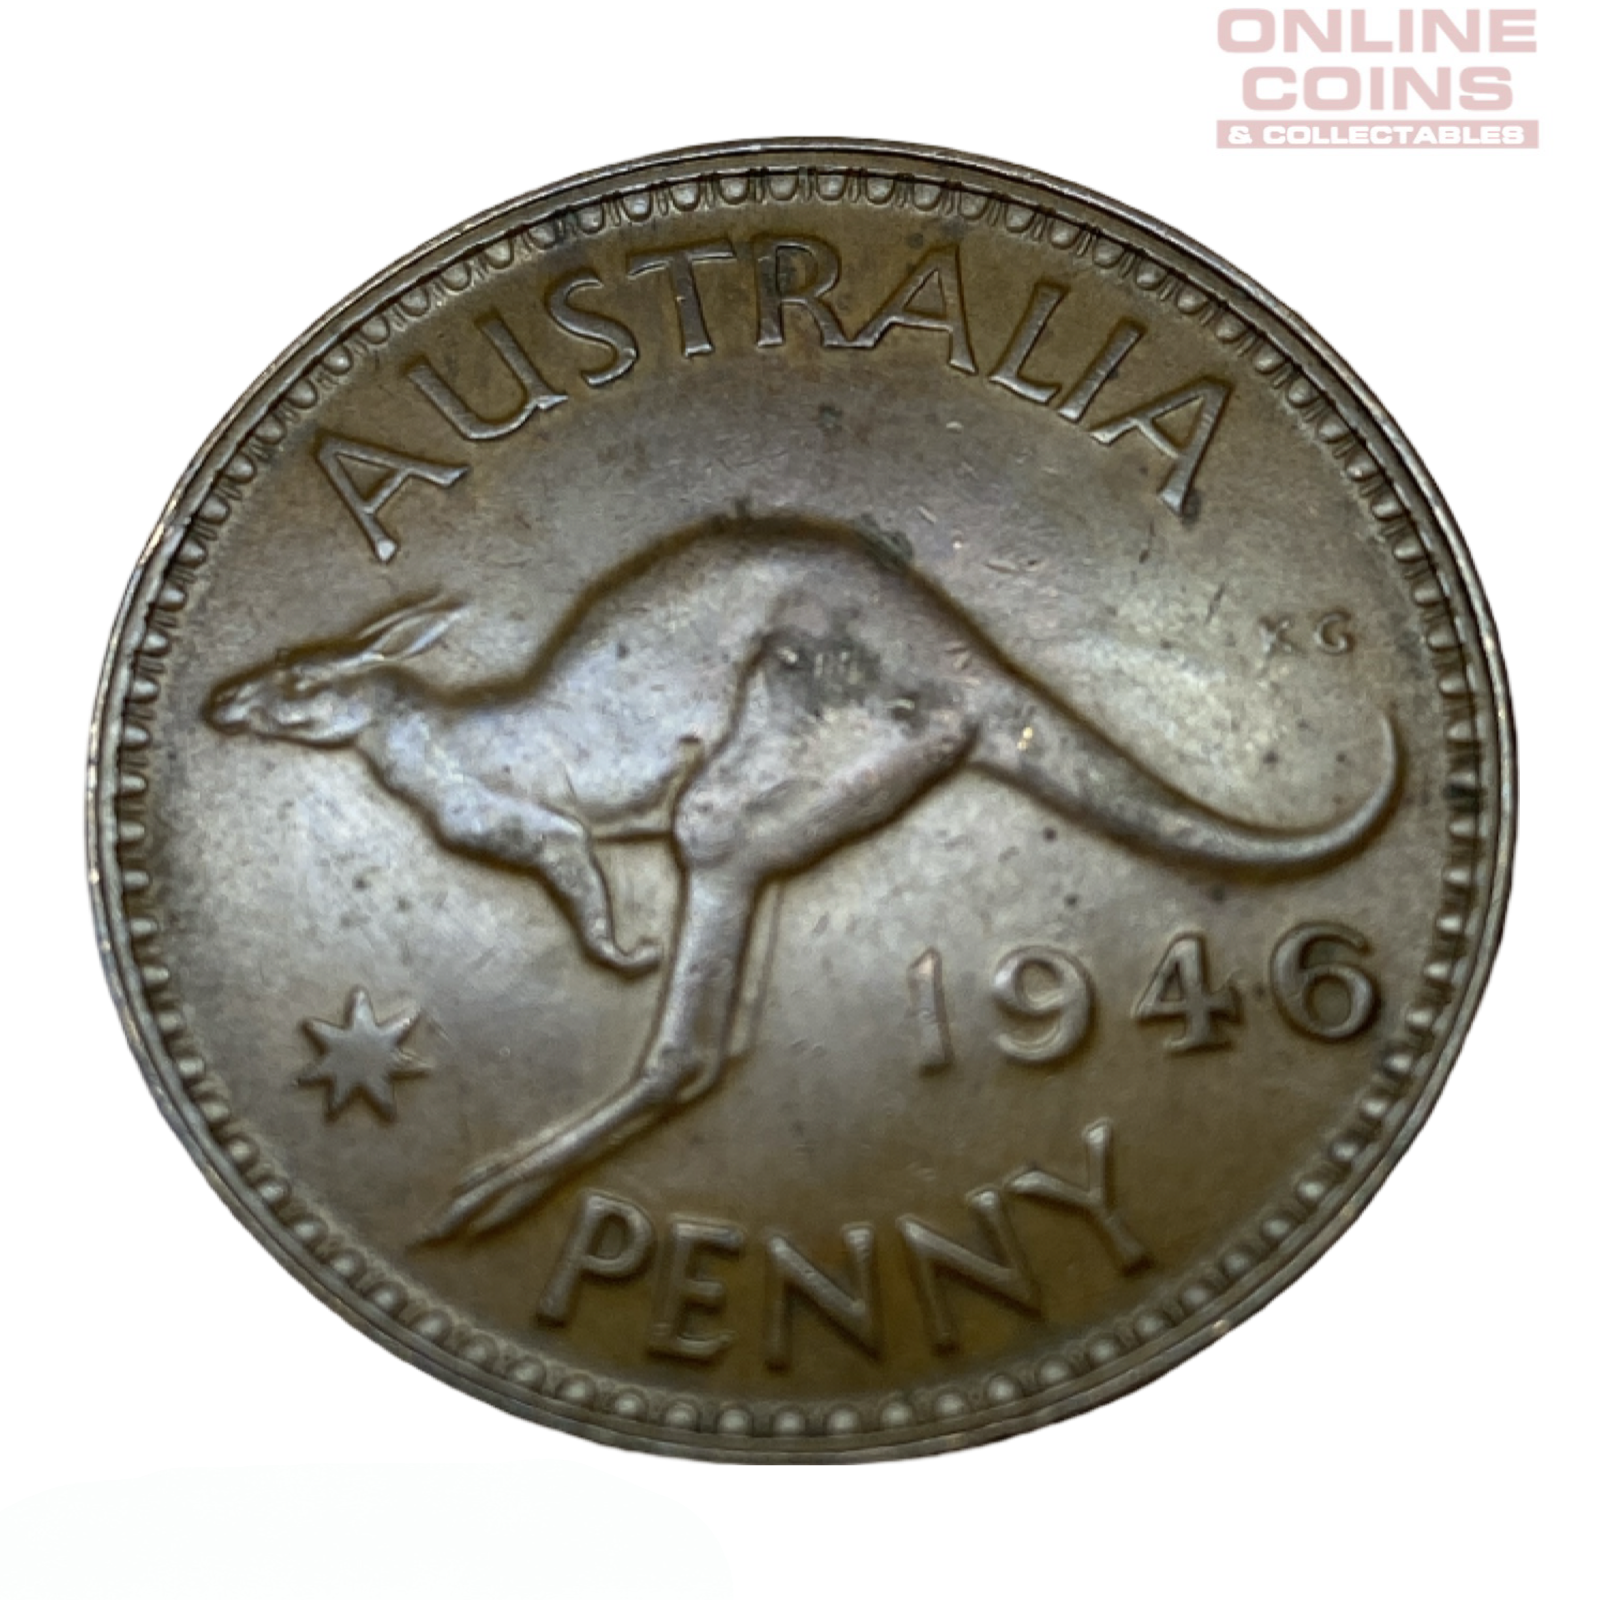 1946 Australian Penny - Very Fine+